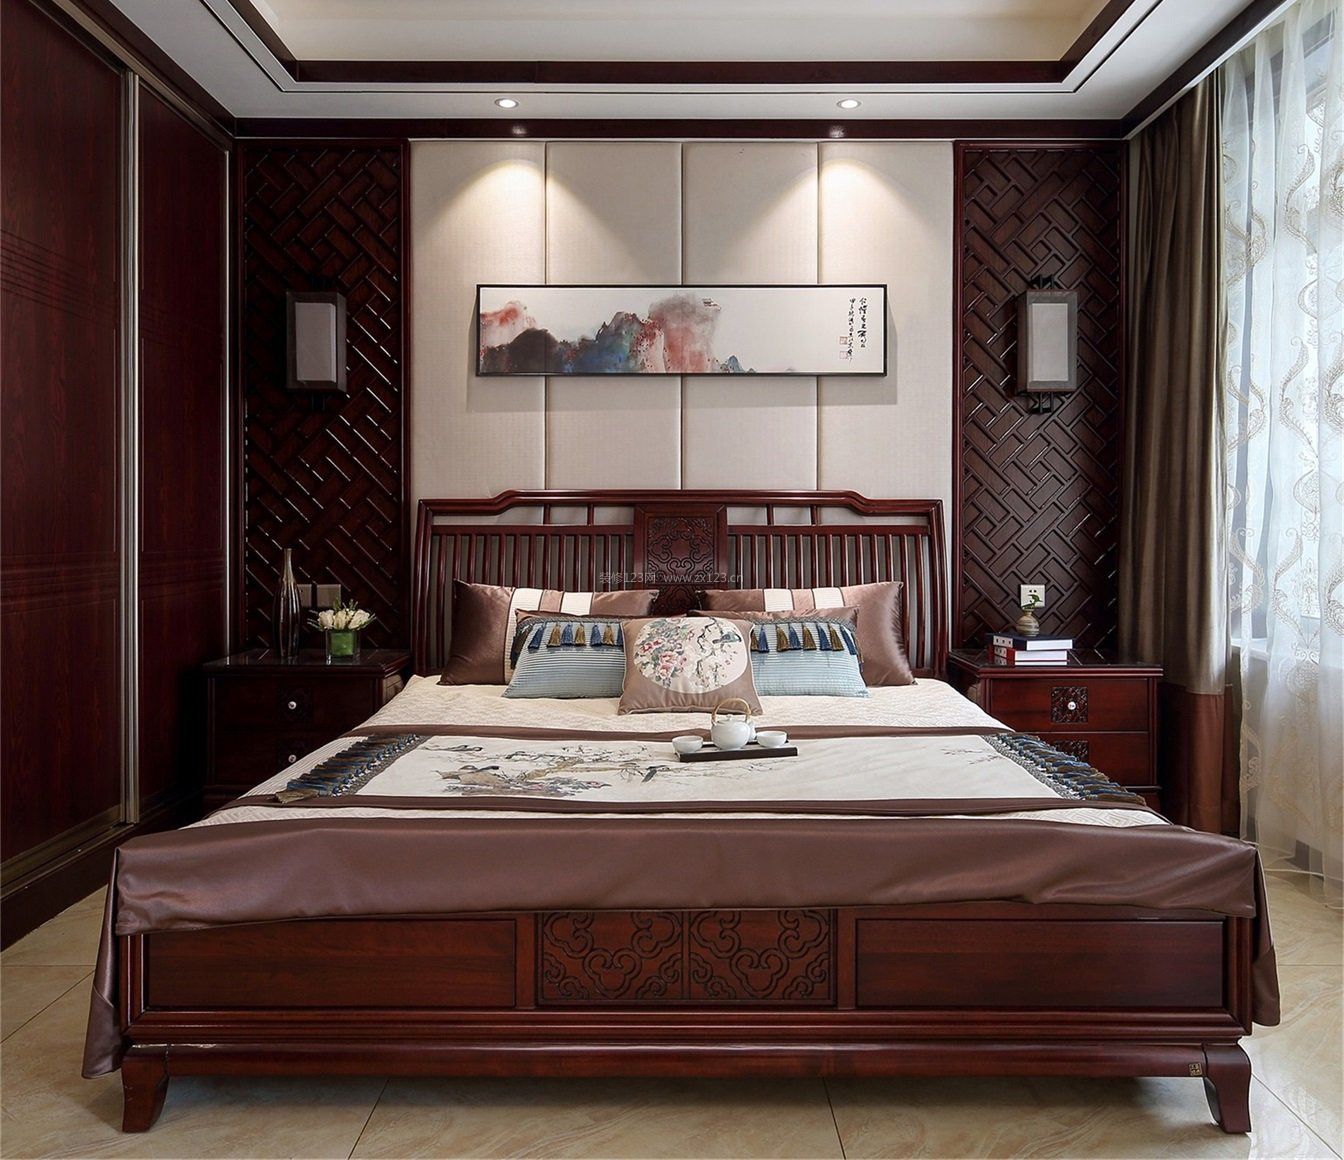 新中式古典卧室壁灯设计图片一览